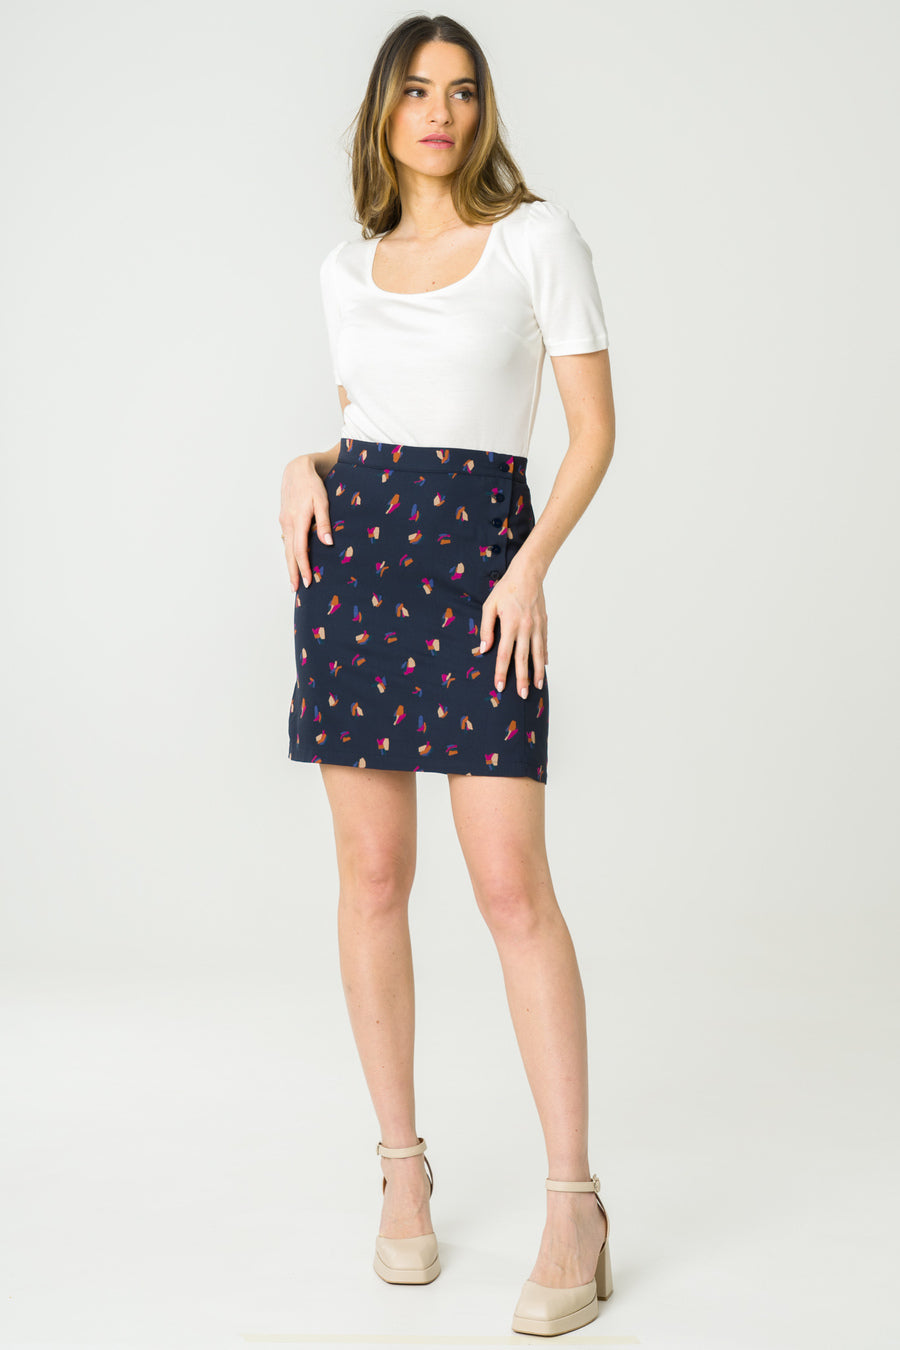 Agave Navy short skirt